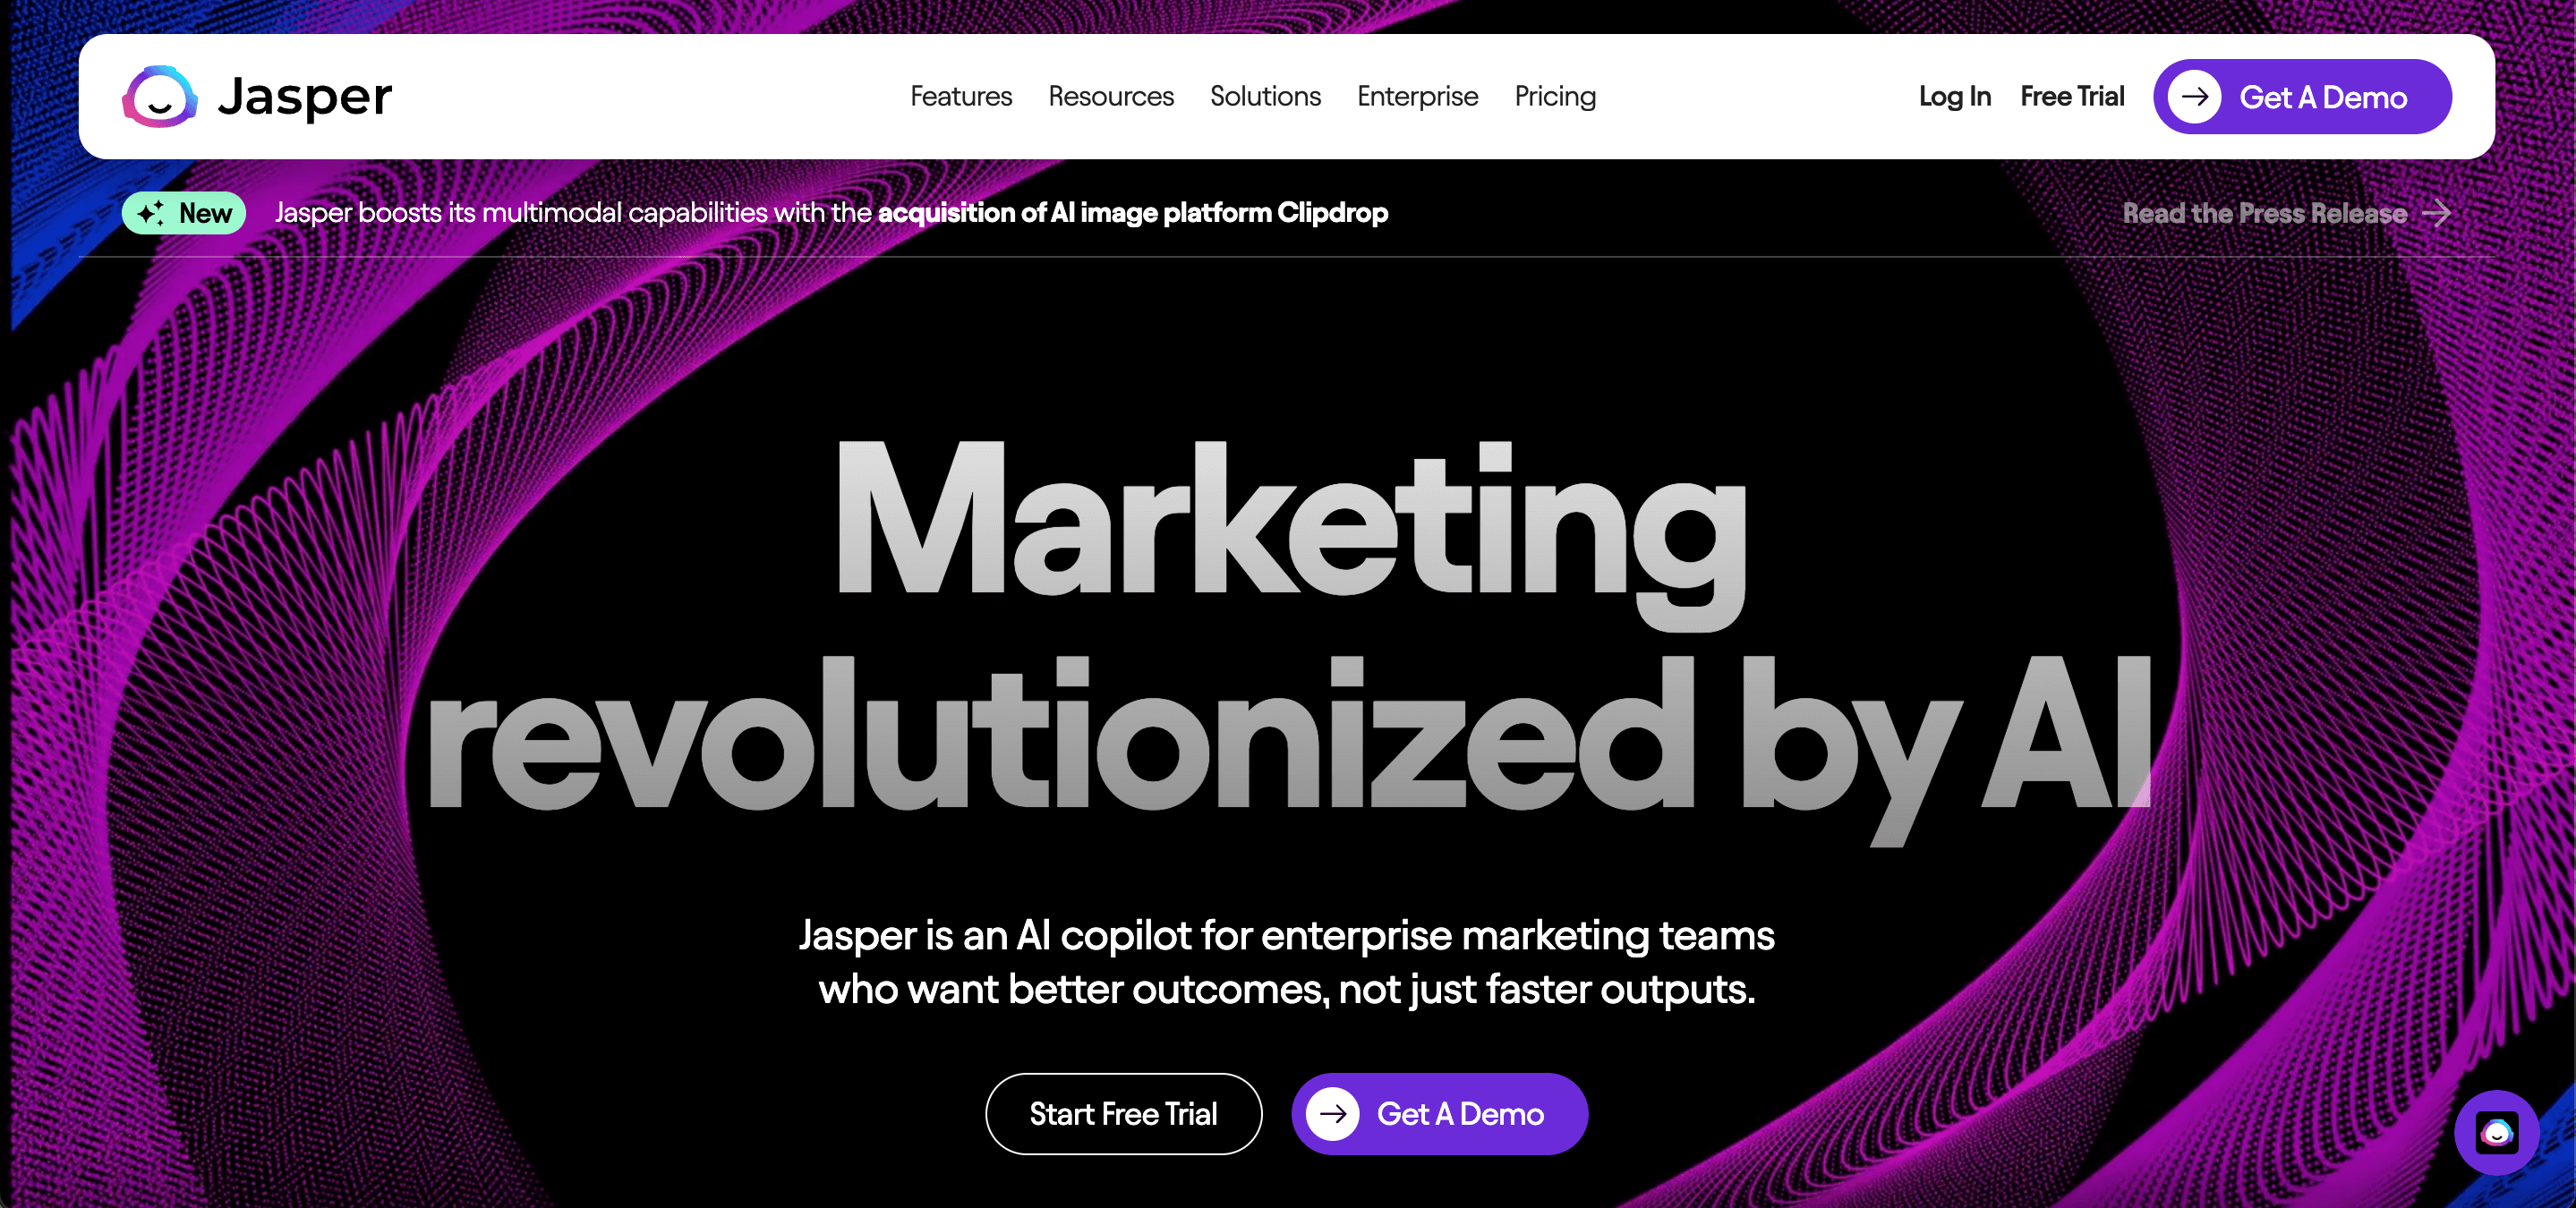 Página inicial do Jasper AI